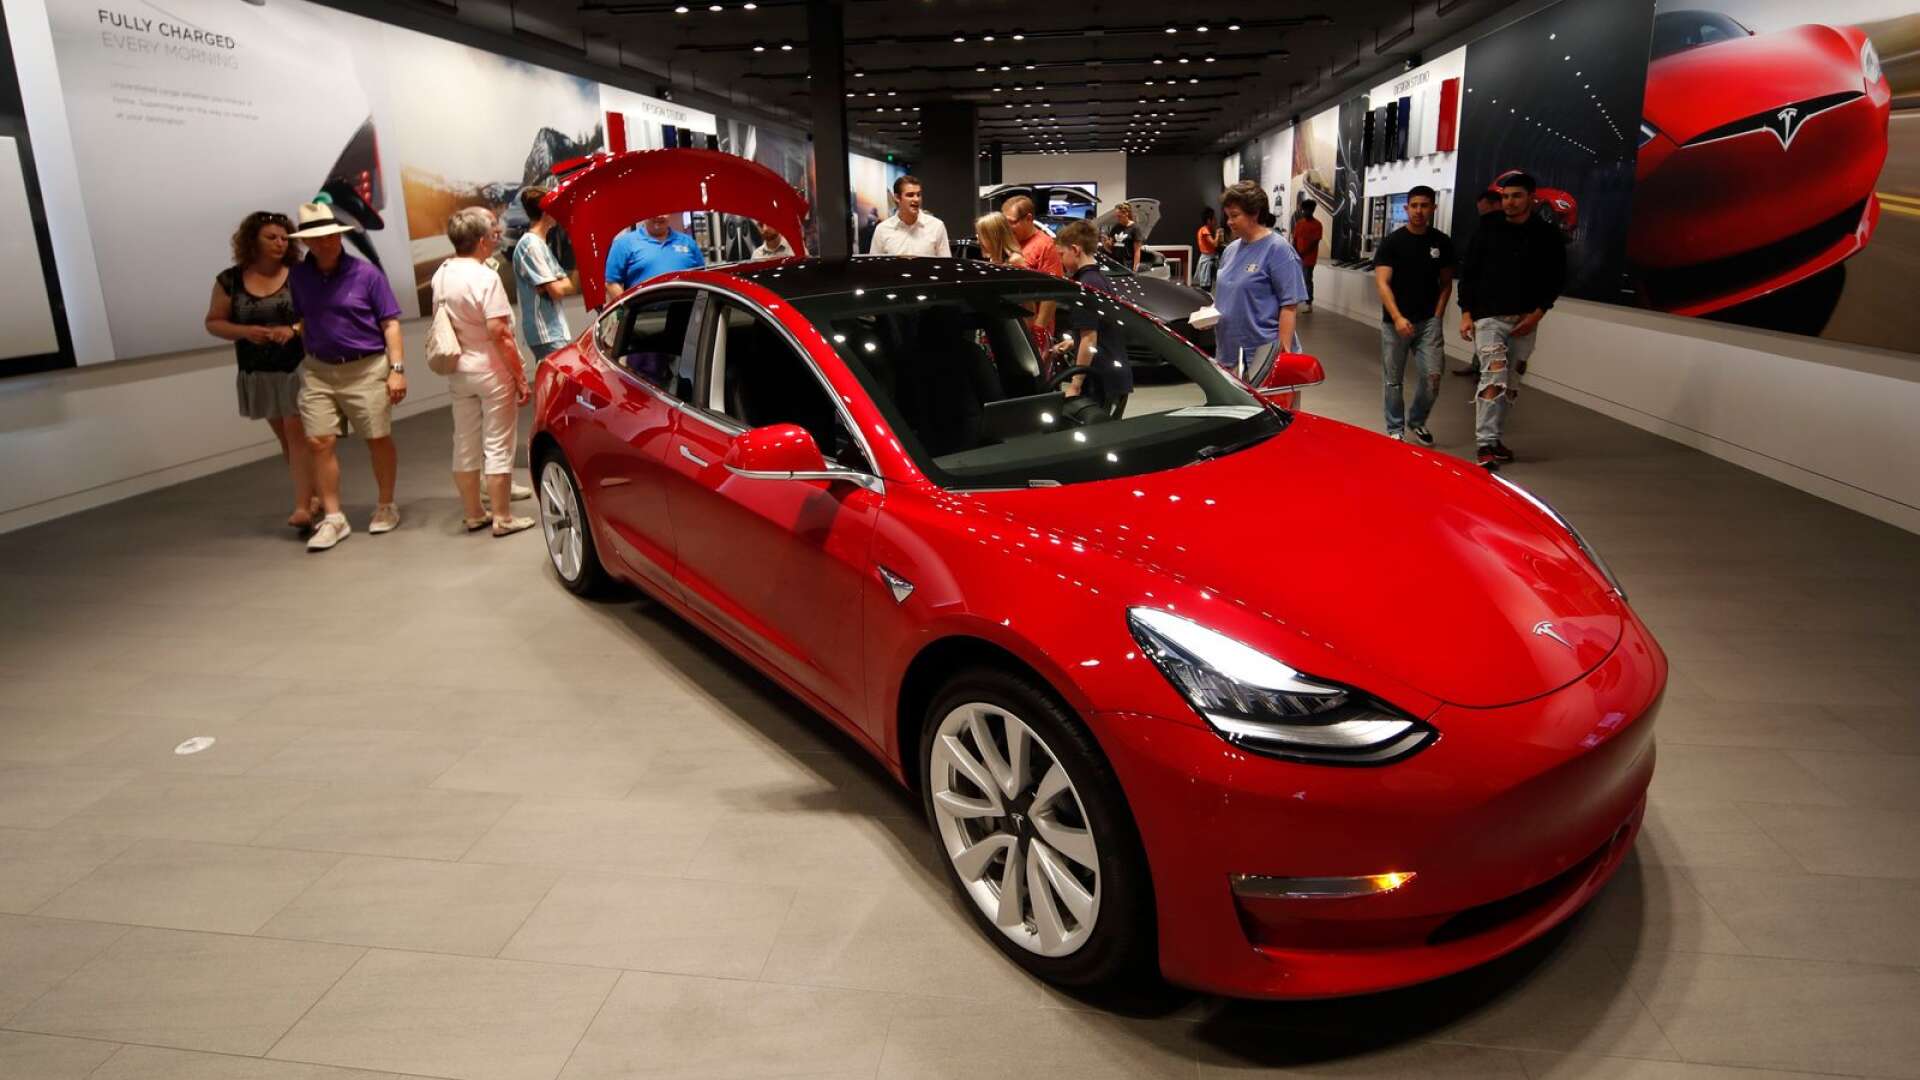 Den mest prestigefyllda bil du kan äga i Sverige enligt en undersökning - en Tesla. 